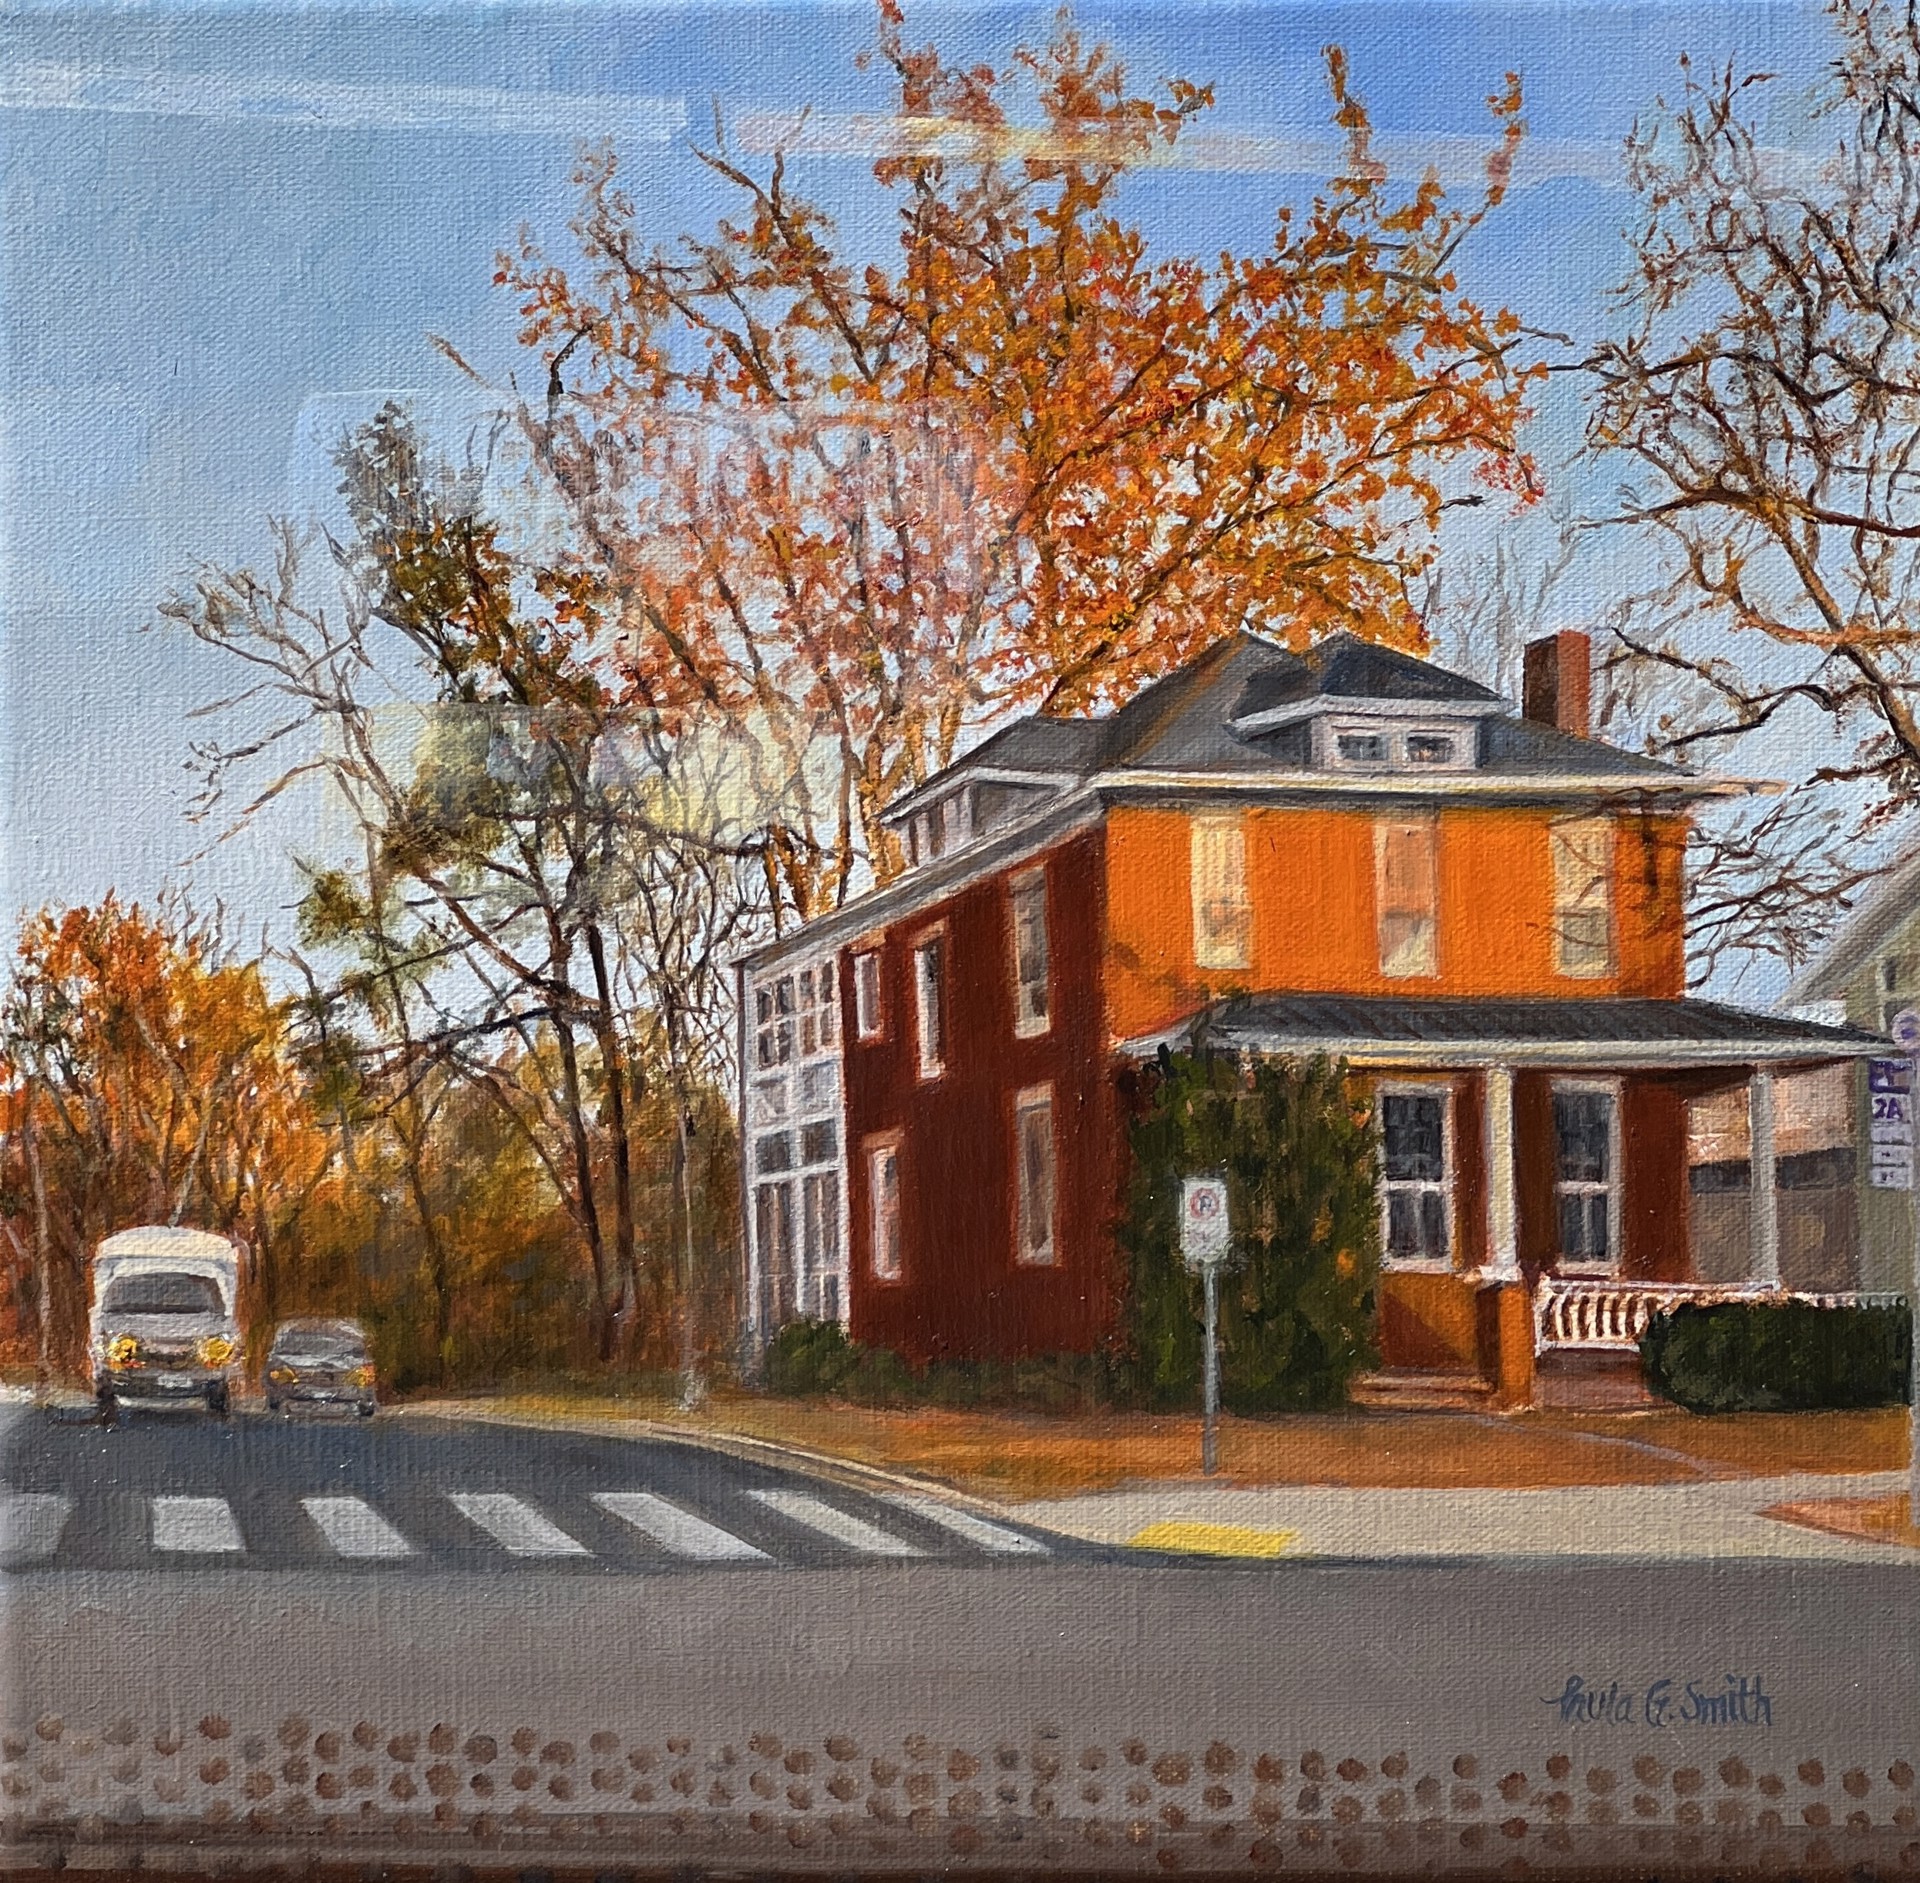 Early Fall Morning Bus Ride by Paula Smith